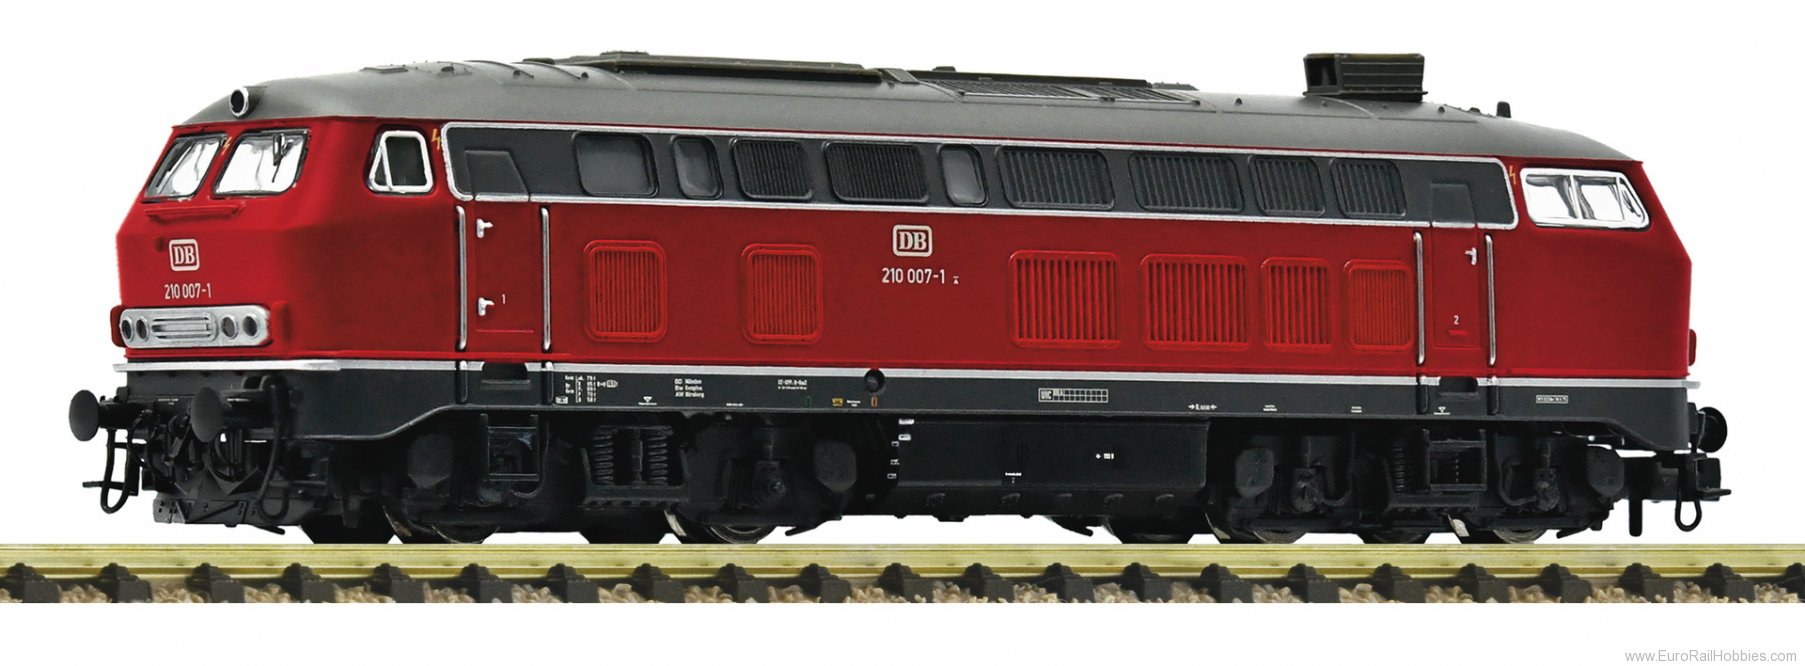 Fleischmann 7360008 DB Diesel Locomotive 210 007-1